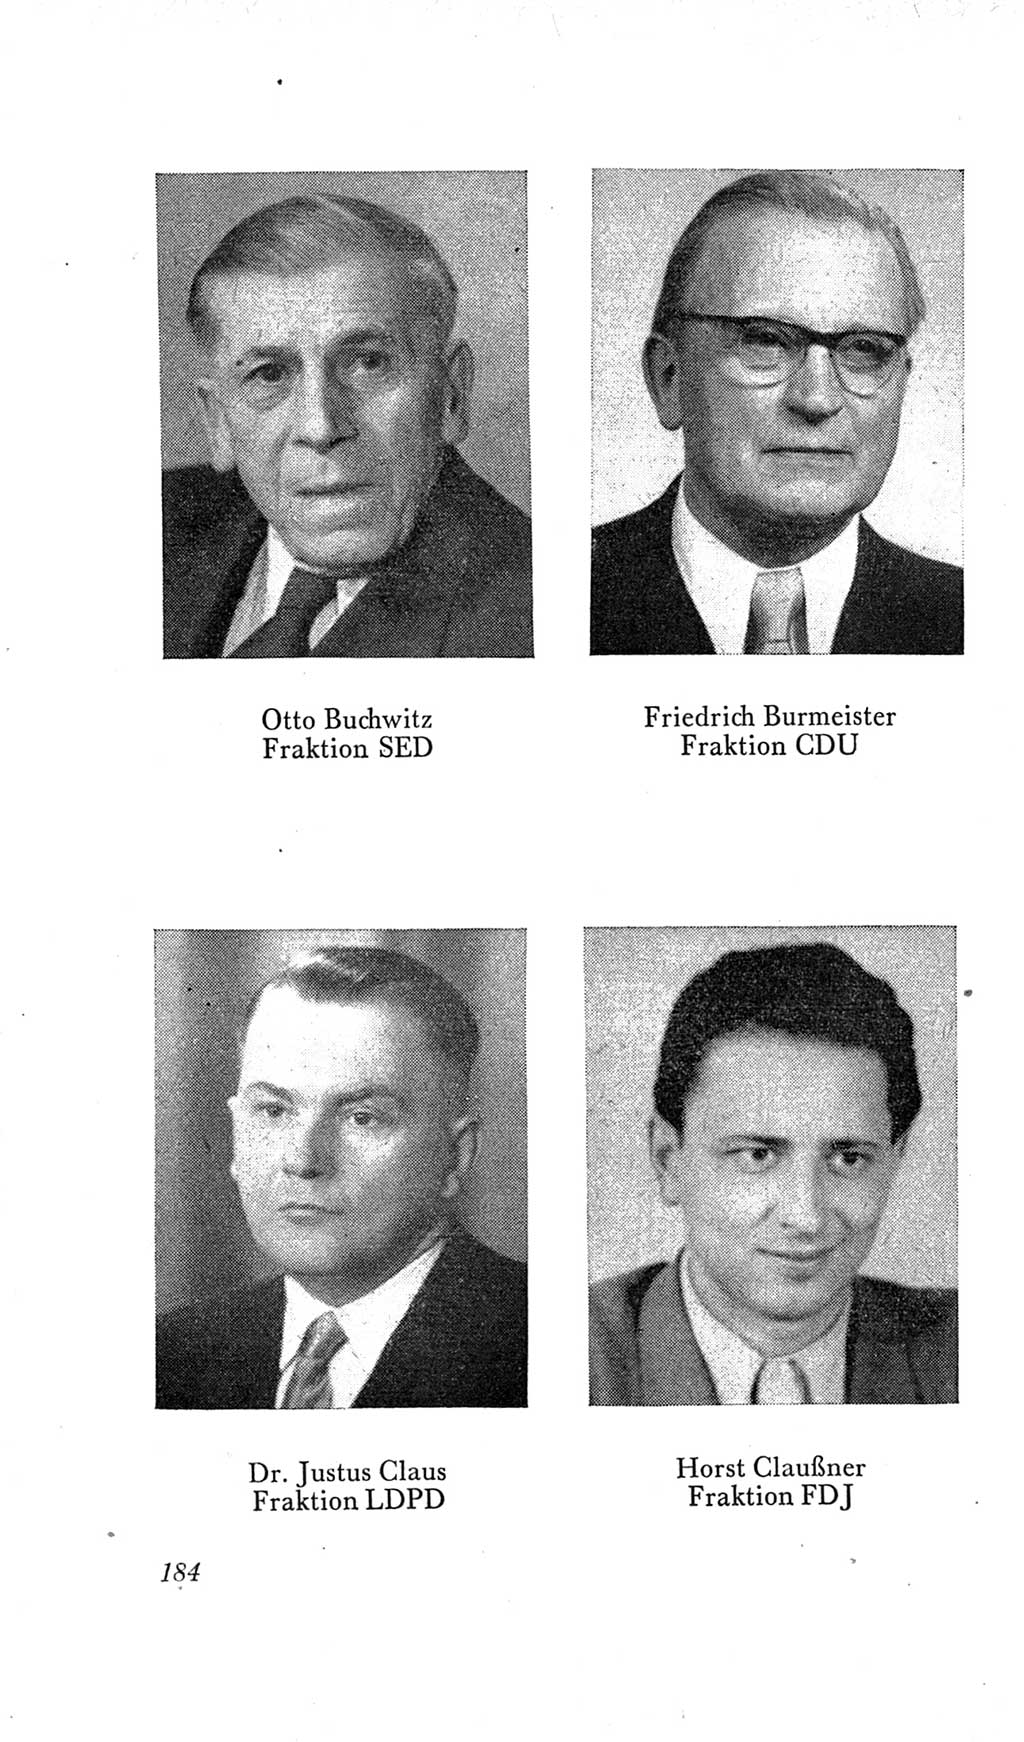 Handbuch der Volkskammer (VK) der Deutschen Demokratischen Republik (DDR), 2. Wahlperiode 1954-1958, Seite 184 (Hdb. VK. DDR, 2. WP. 1954-1958, S. 184)